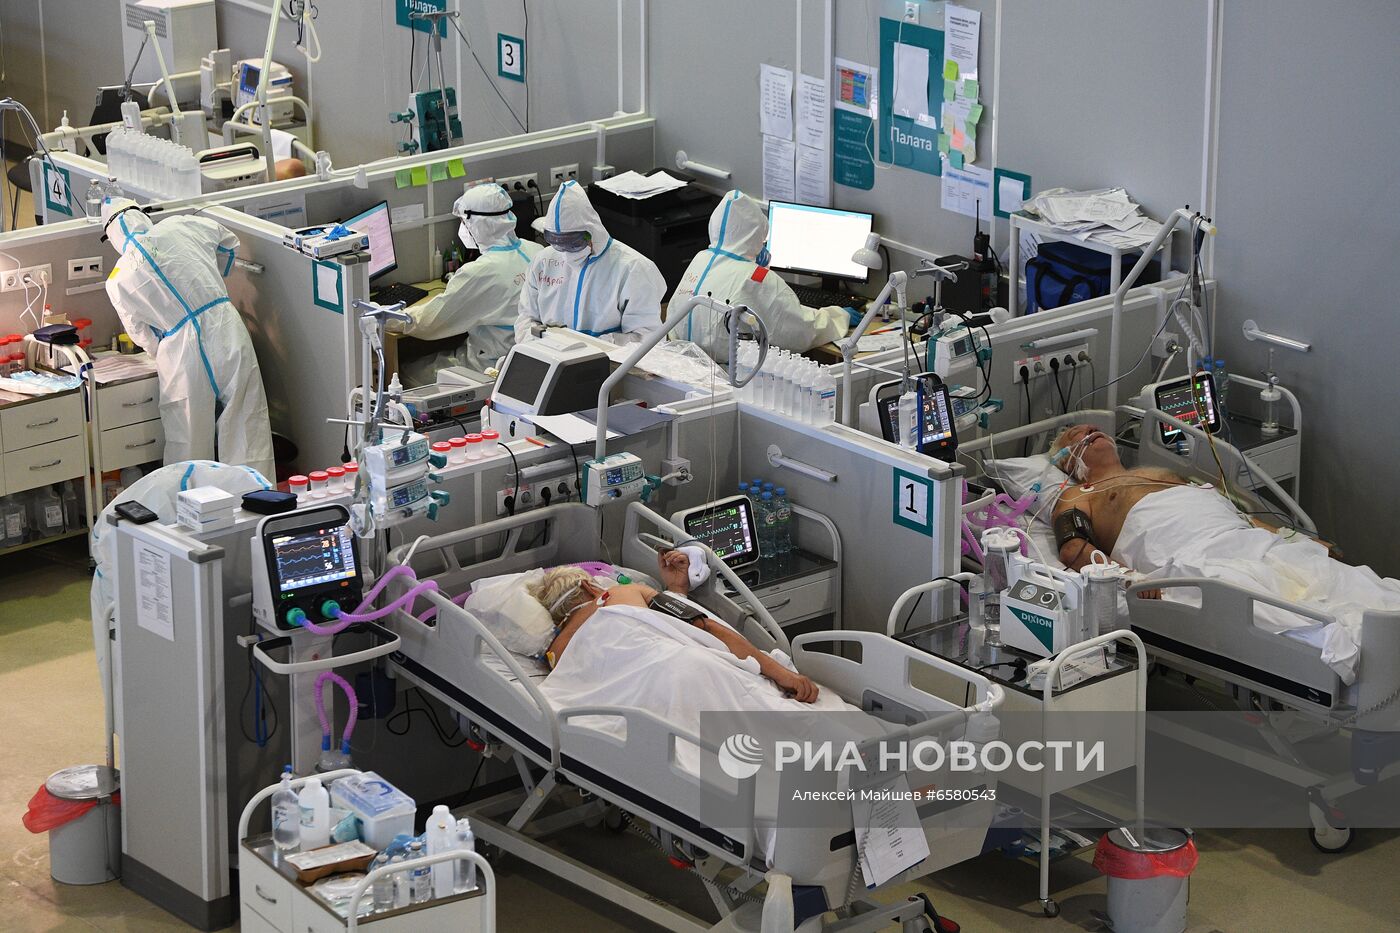 Резервный госпиталь COVID-19 в КВЦ "Сокольники"